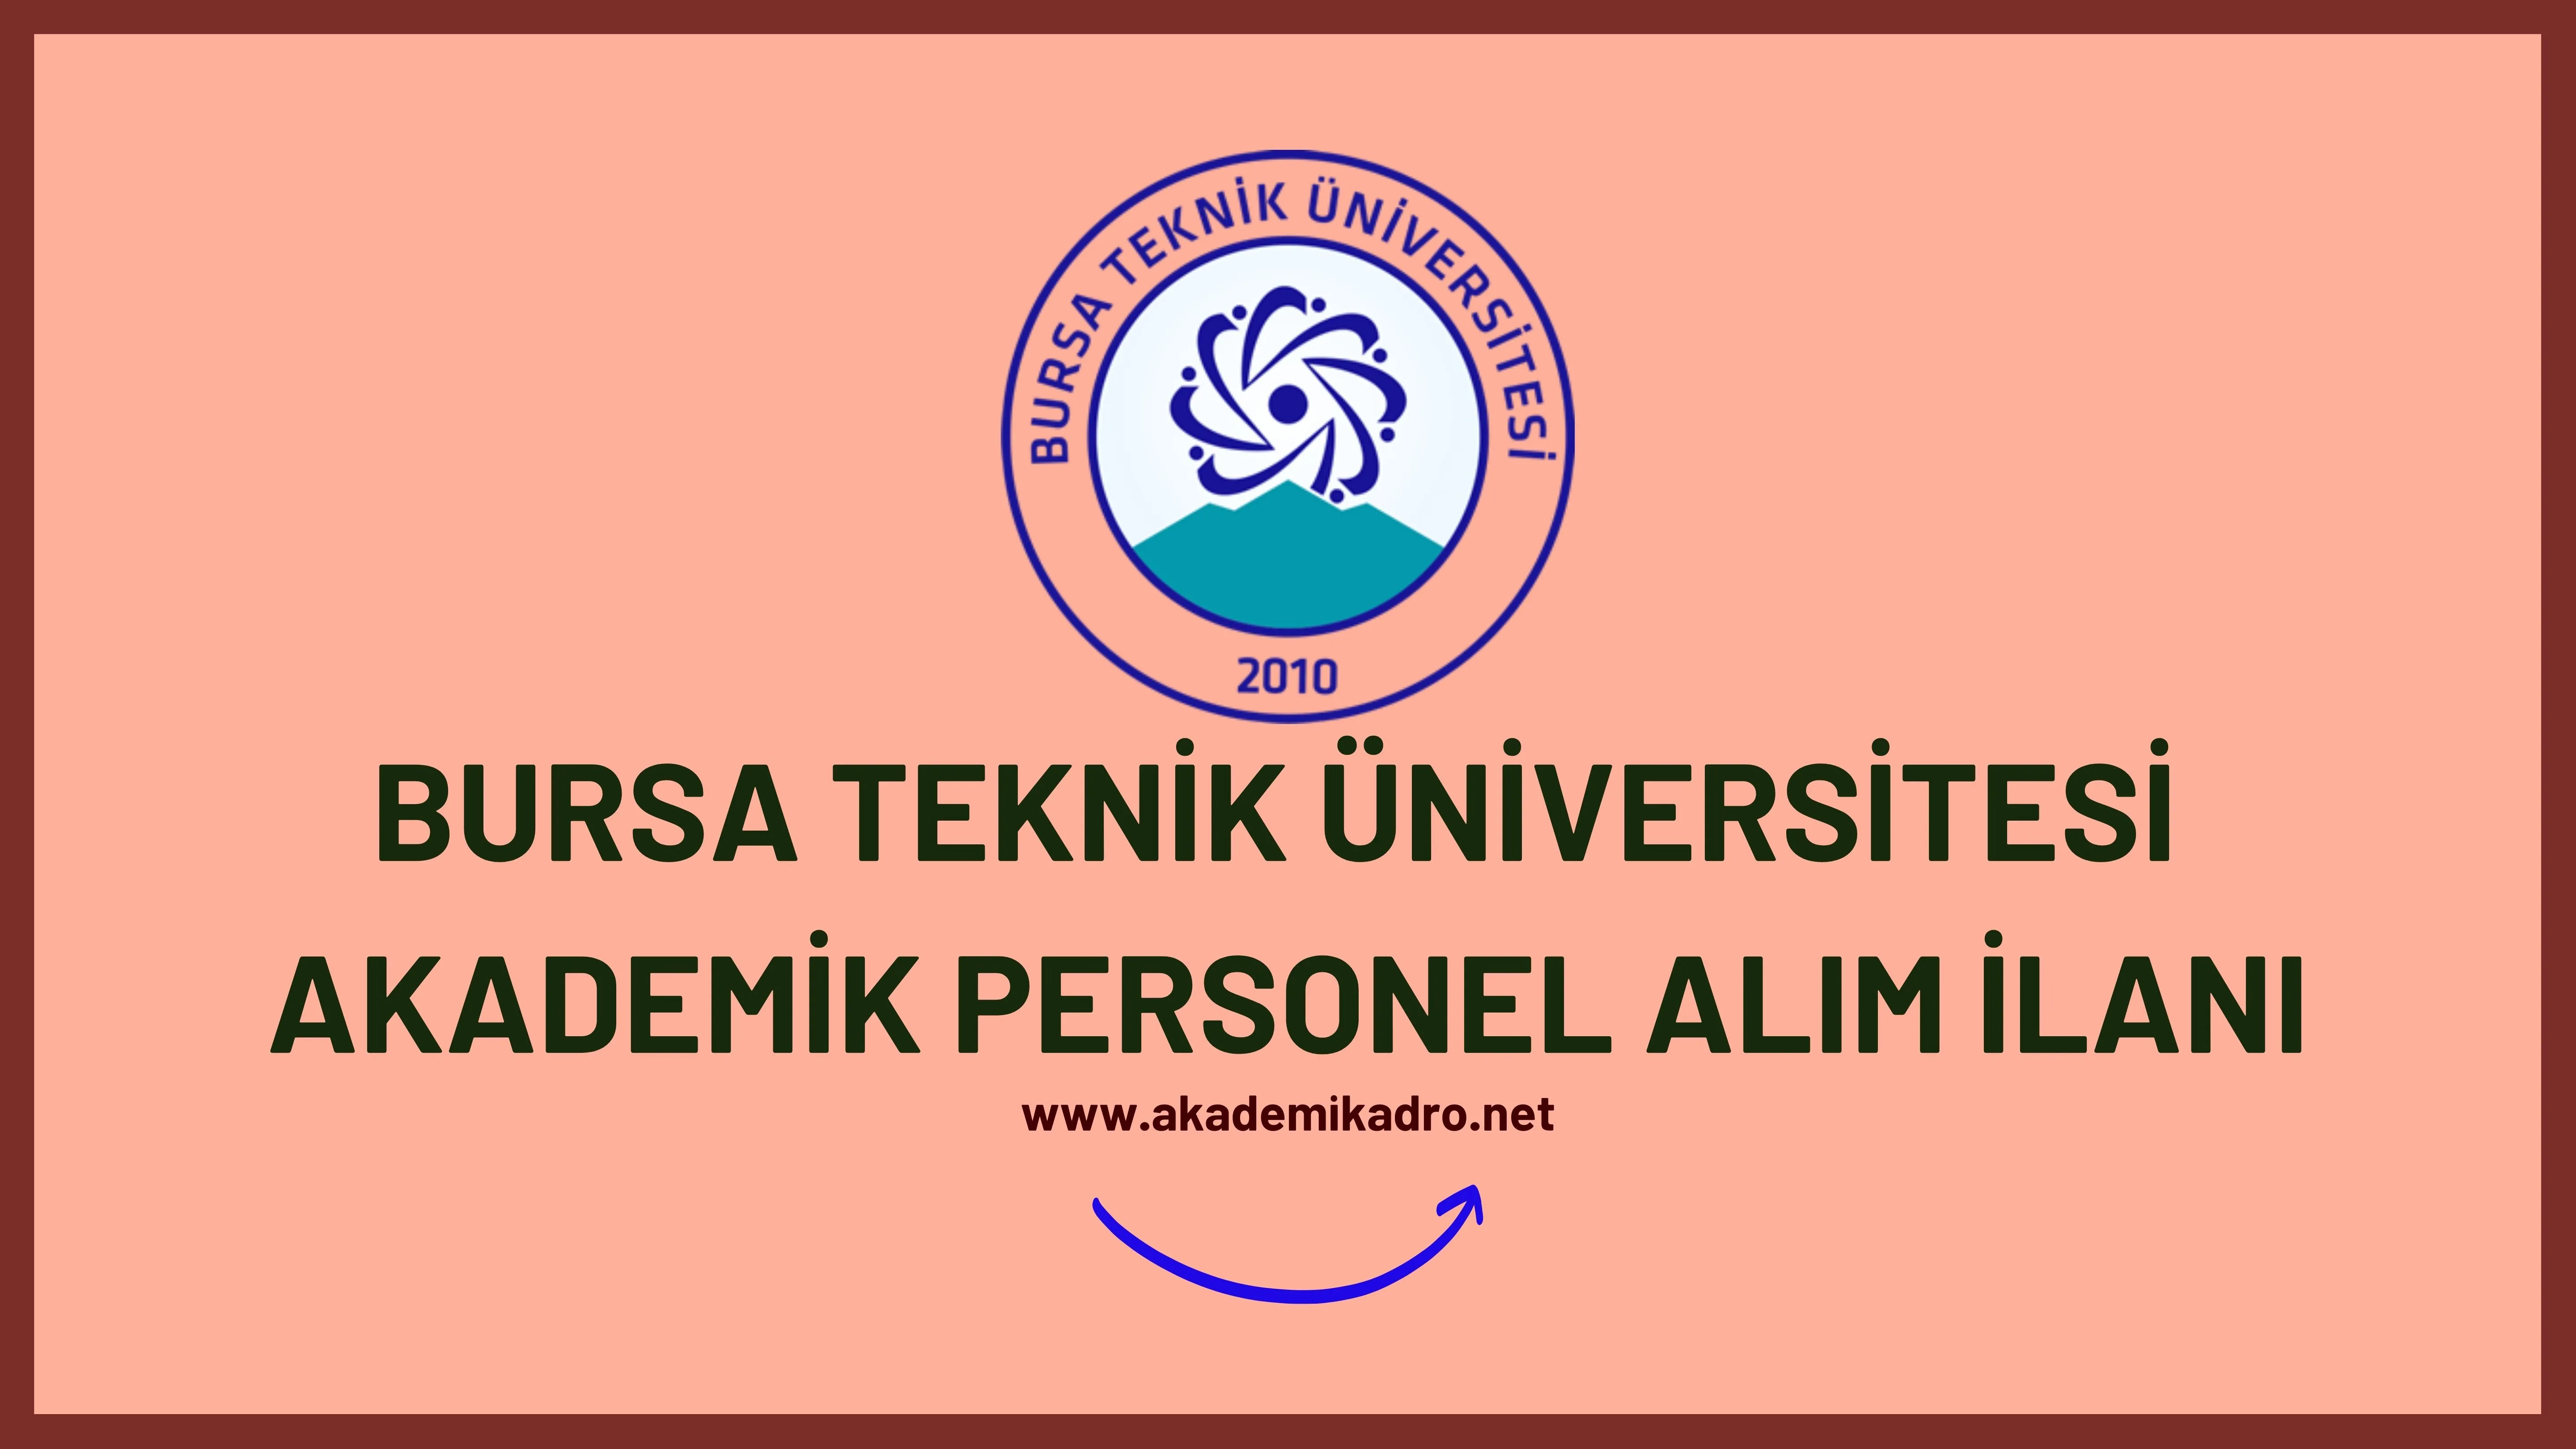 Bursa Teknik Üniversitesi birçok alandan 19 öğretim üyesi alacak. Son başvuru tarihi 17 Ekim 2022.